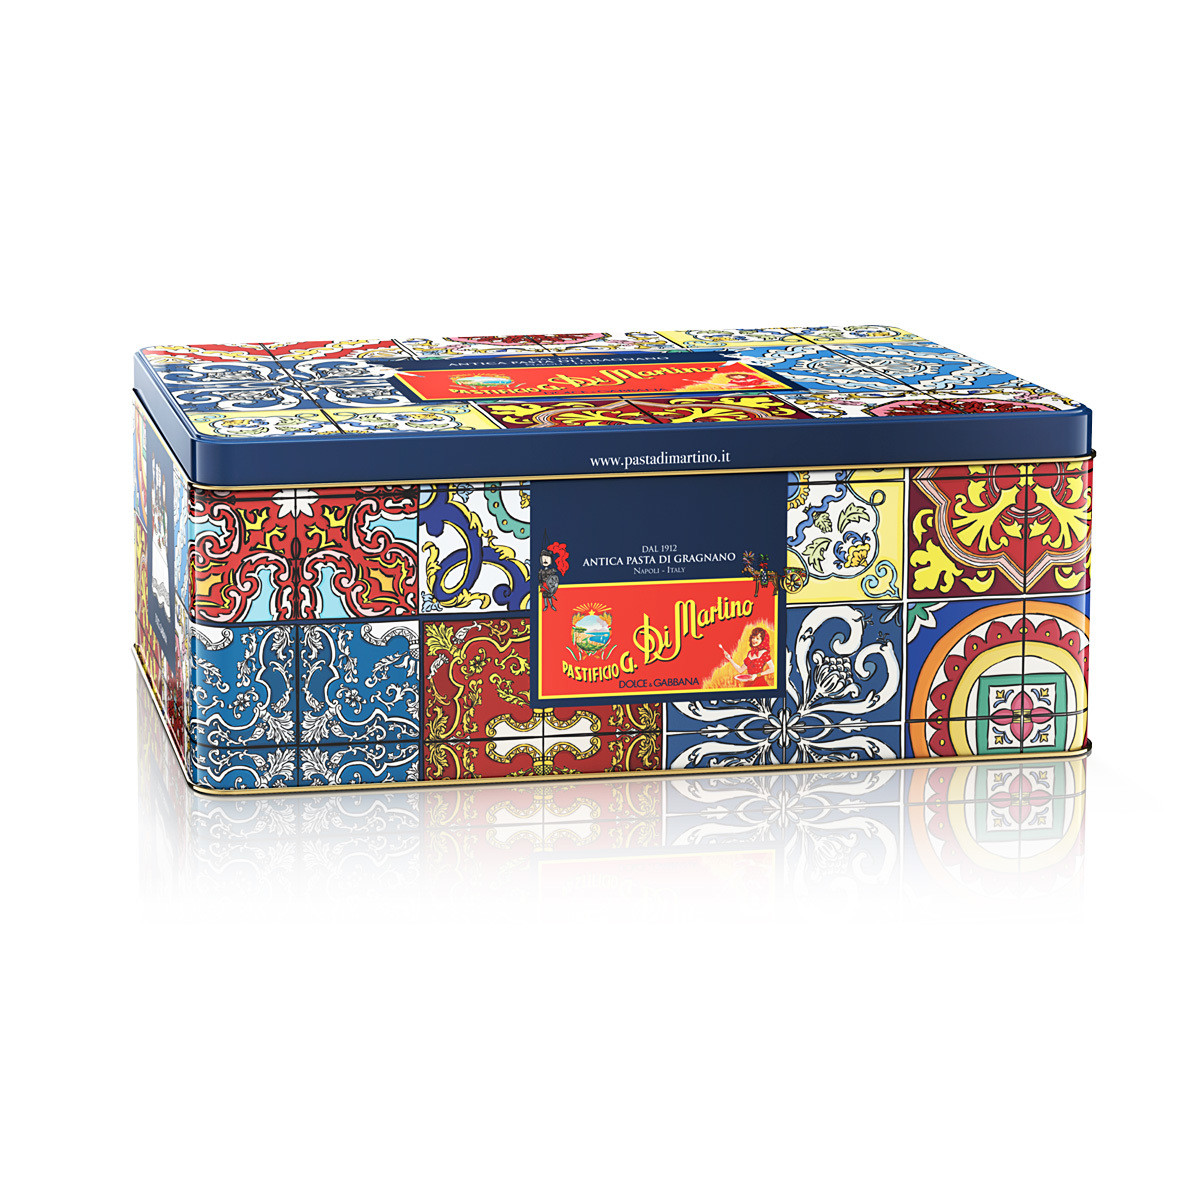 Подарочный набор, ДИ МАРТИНО Dolce & Gabanna фартук + макароны (5х500г) + жестяная коробка